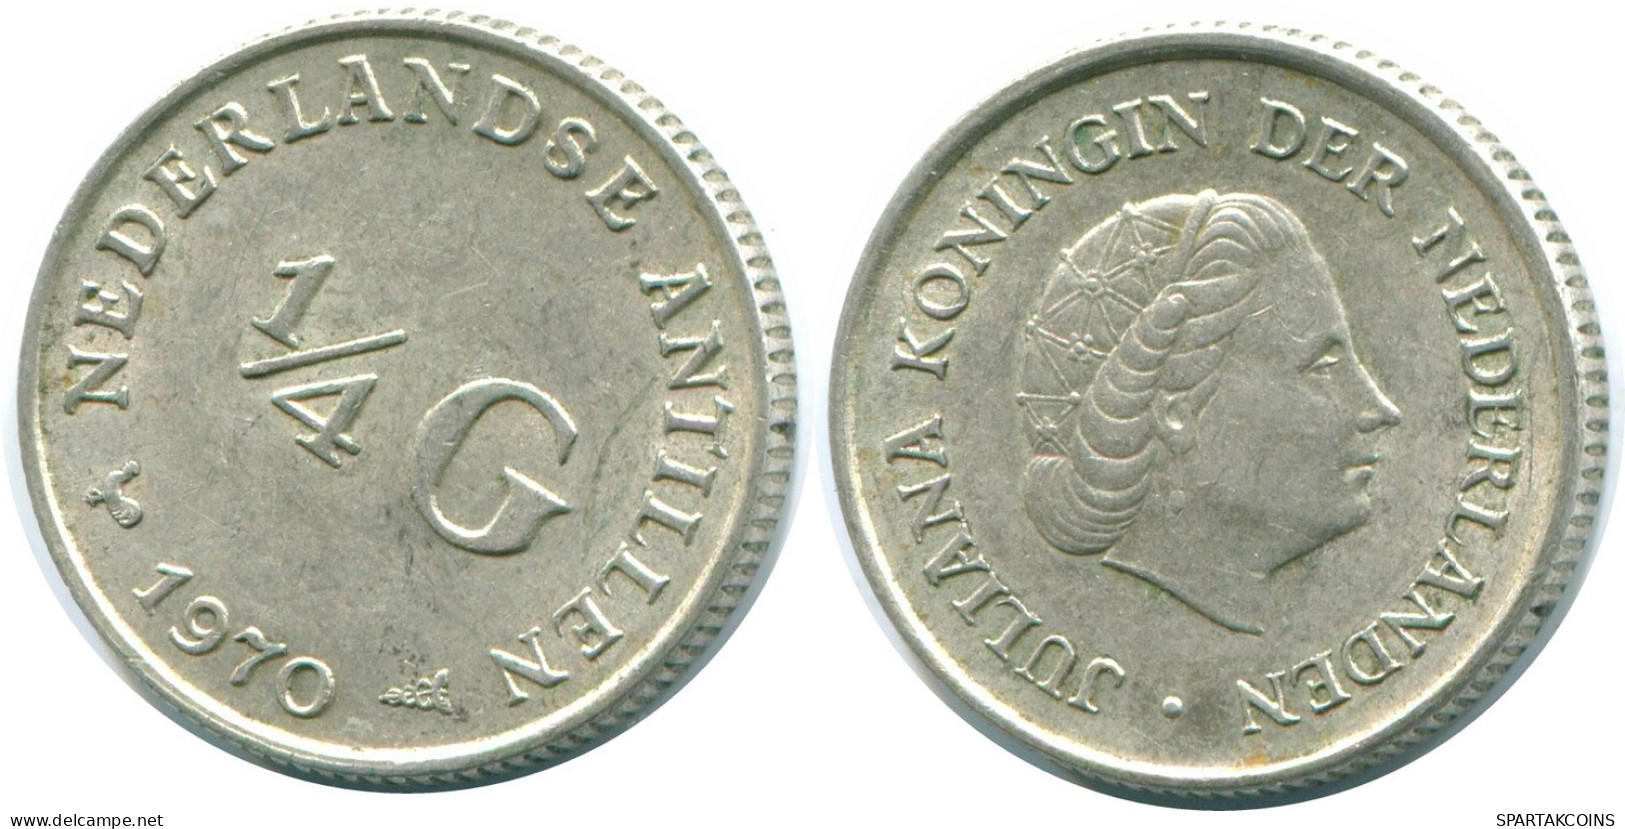 1/4 GULDEN 1970 NIEDERLÄNDISCHE ANTILLEN SILBER Koloniale Münze #NL11636.4.D.A - Niederländische Antillen